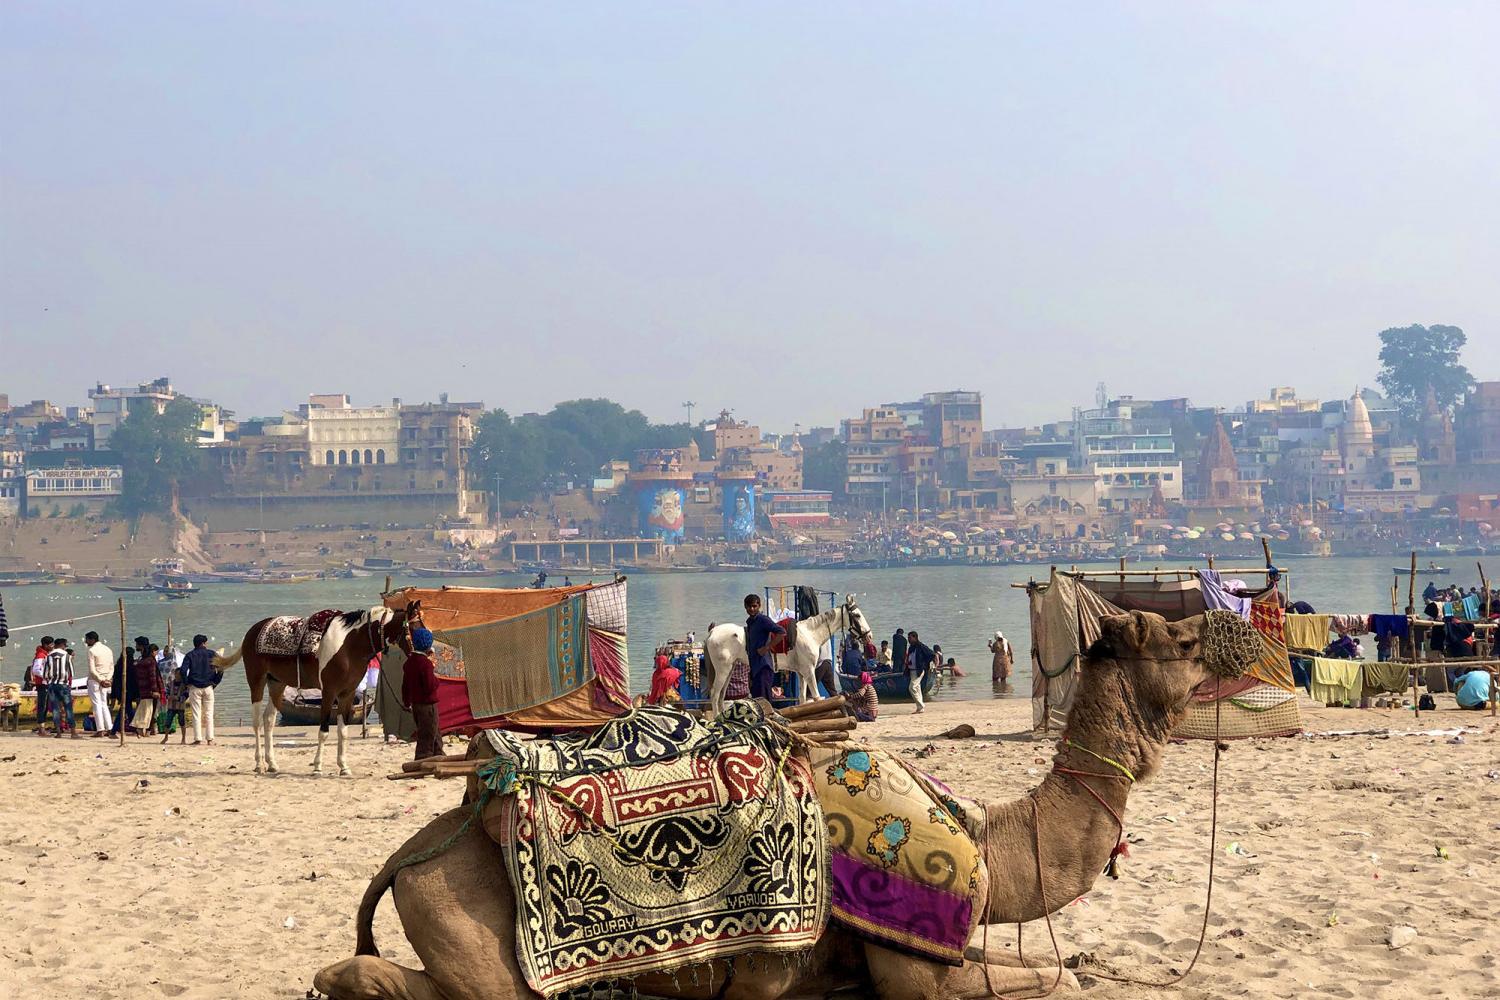 A photo of a camel taken on a j项 study tour.